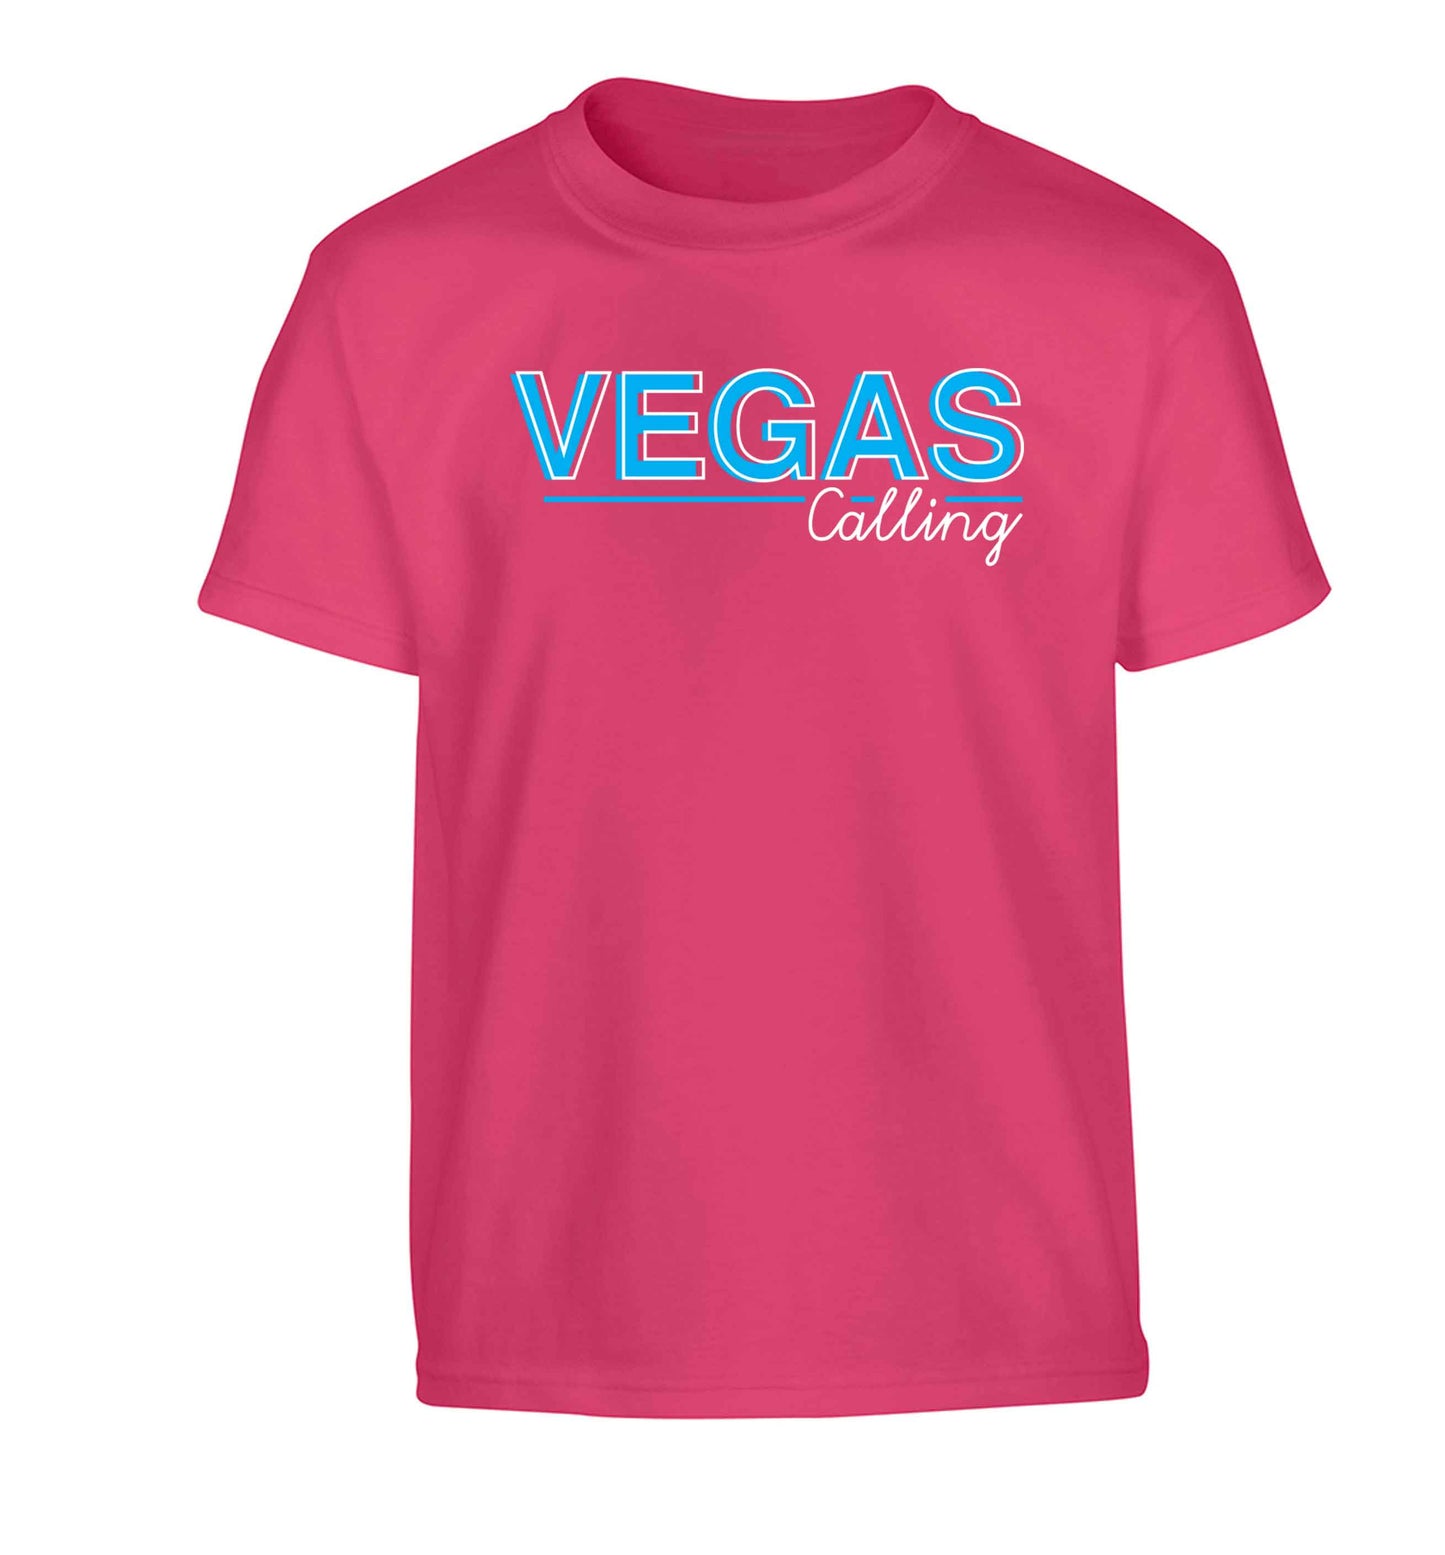 Vegas calling Children's pink Tshirt 12-13 Years